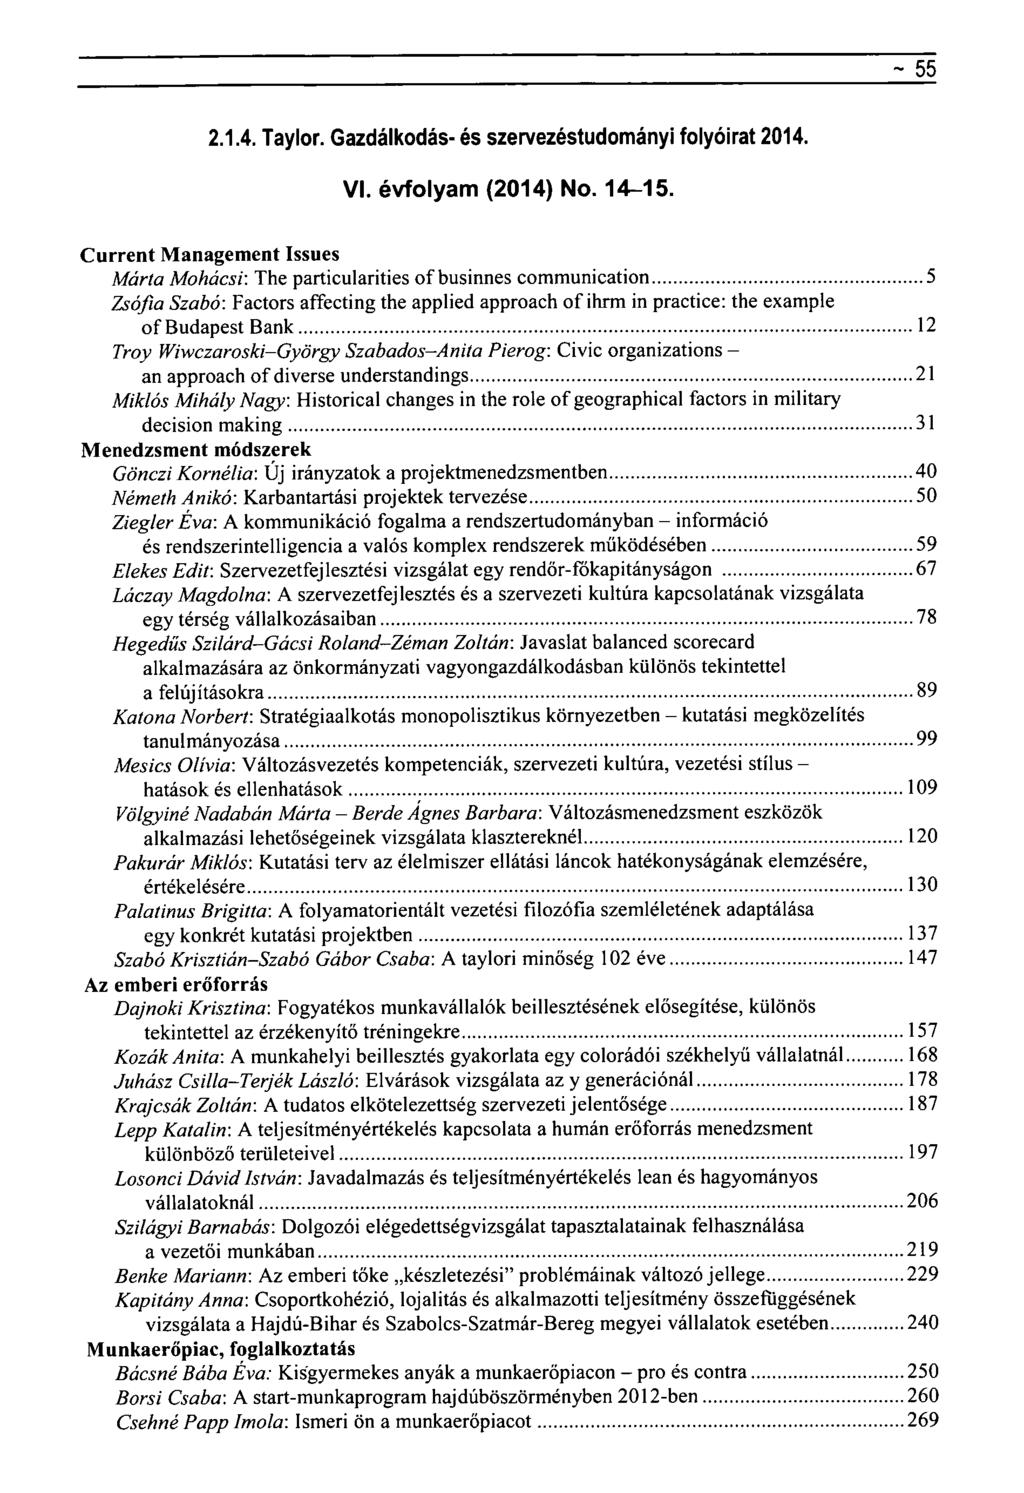 ~ 55 2.1.4. Taylor. Gazdálkodás- és szervezéstudományi folyóirat 2014. VI. évfolyam (2014) No. 14-15.